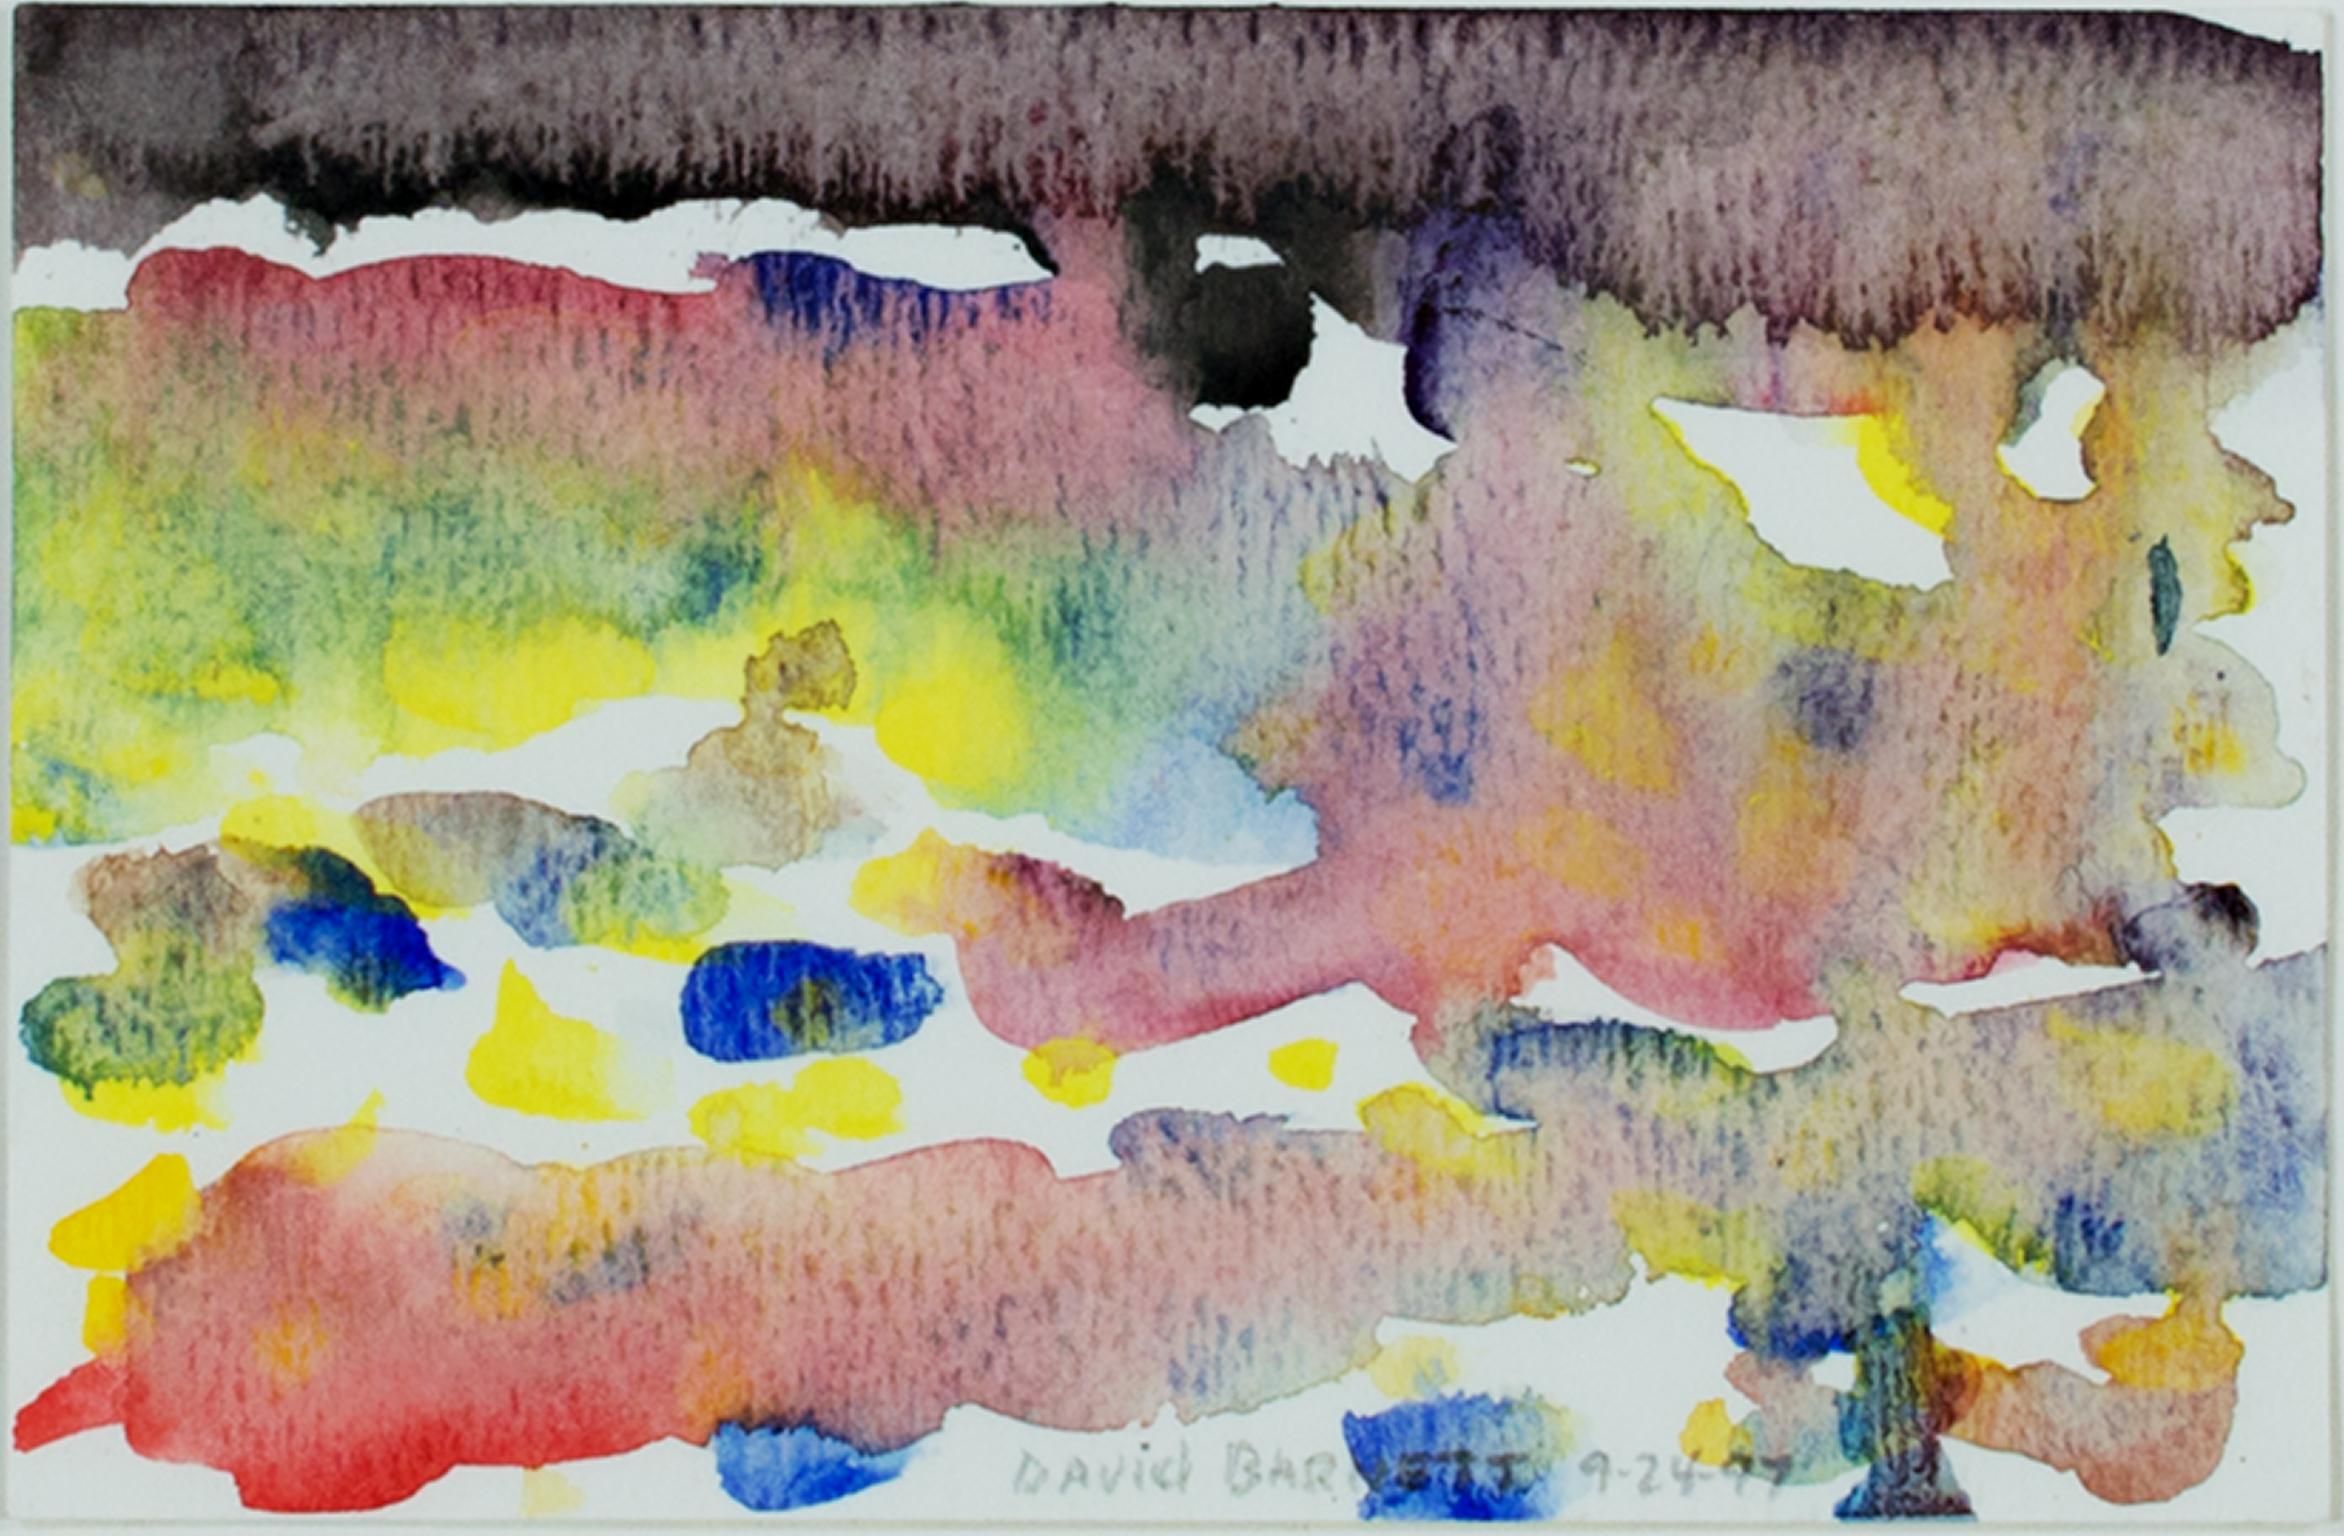 "Postcard Size Impression of Autumn at Star Lake, WI" ist ein Original-Aquarell von David Barnett, signiert in der unteren Mitte. Das Werk ist eine abstrakte Darstellung der Spiegelungen des herbstlichen Laubes auf der ruhigen Oberfläche des